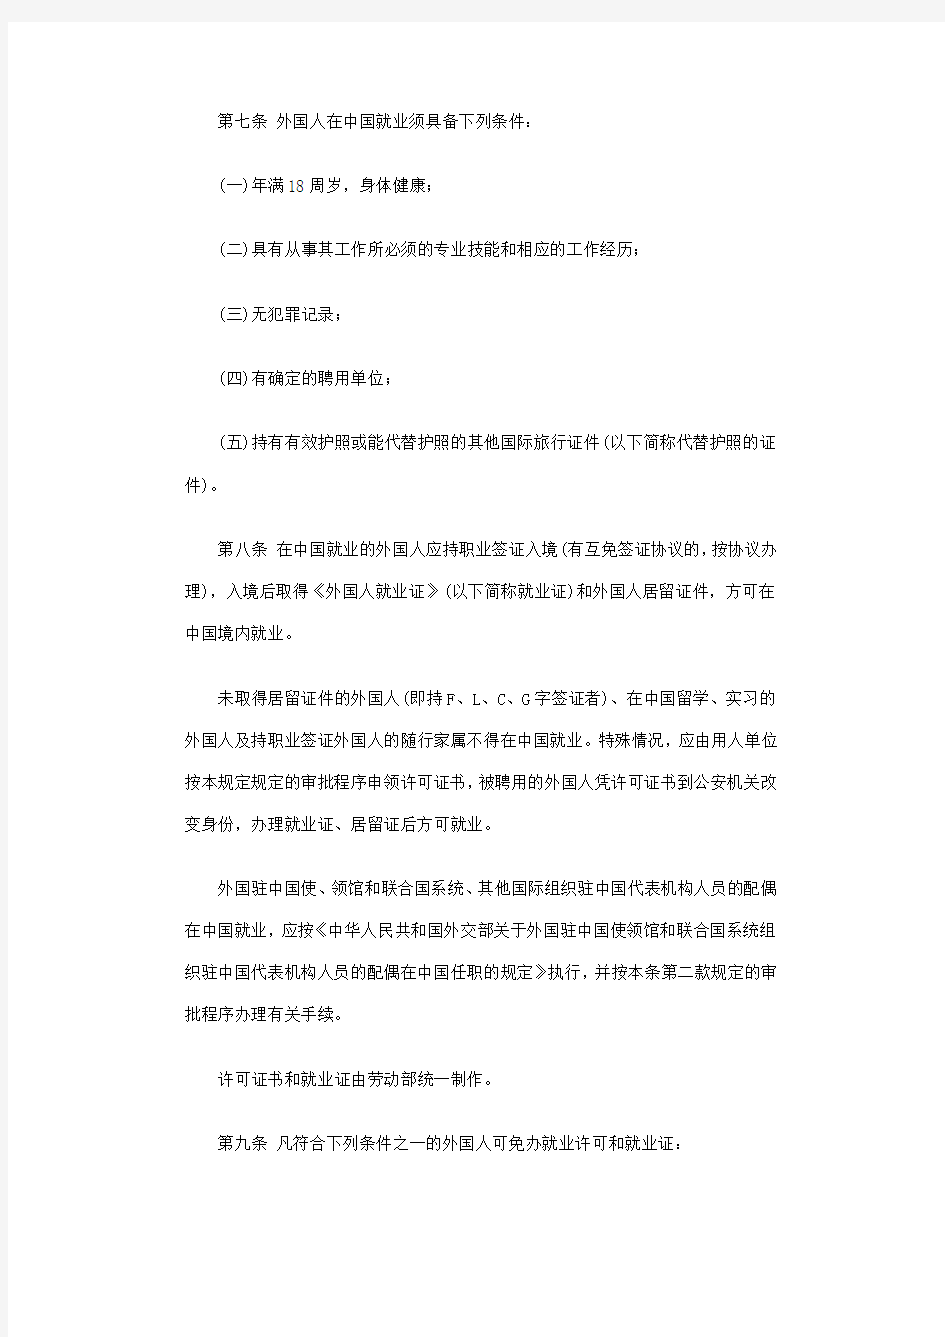 《外国人在中国就业管理规定》(劳部发[1996]29号)第11条